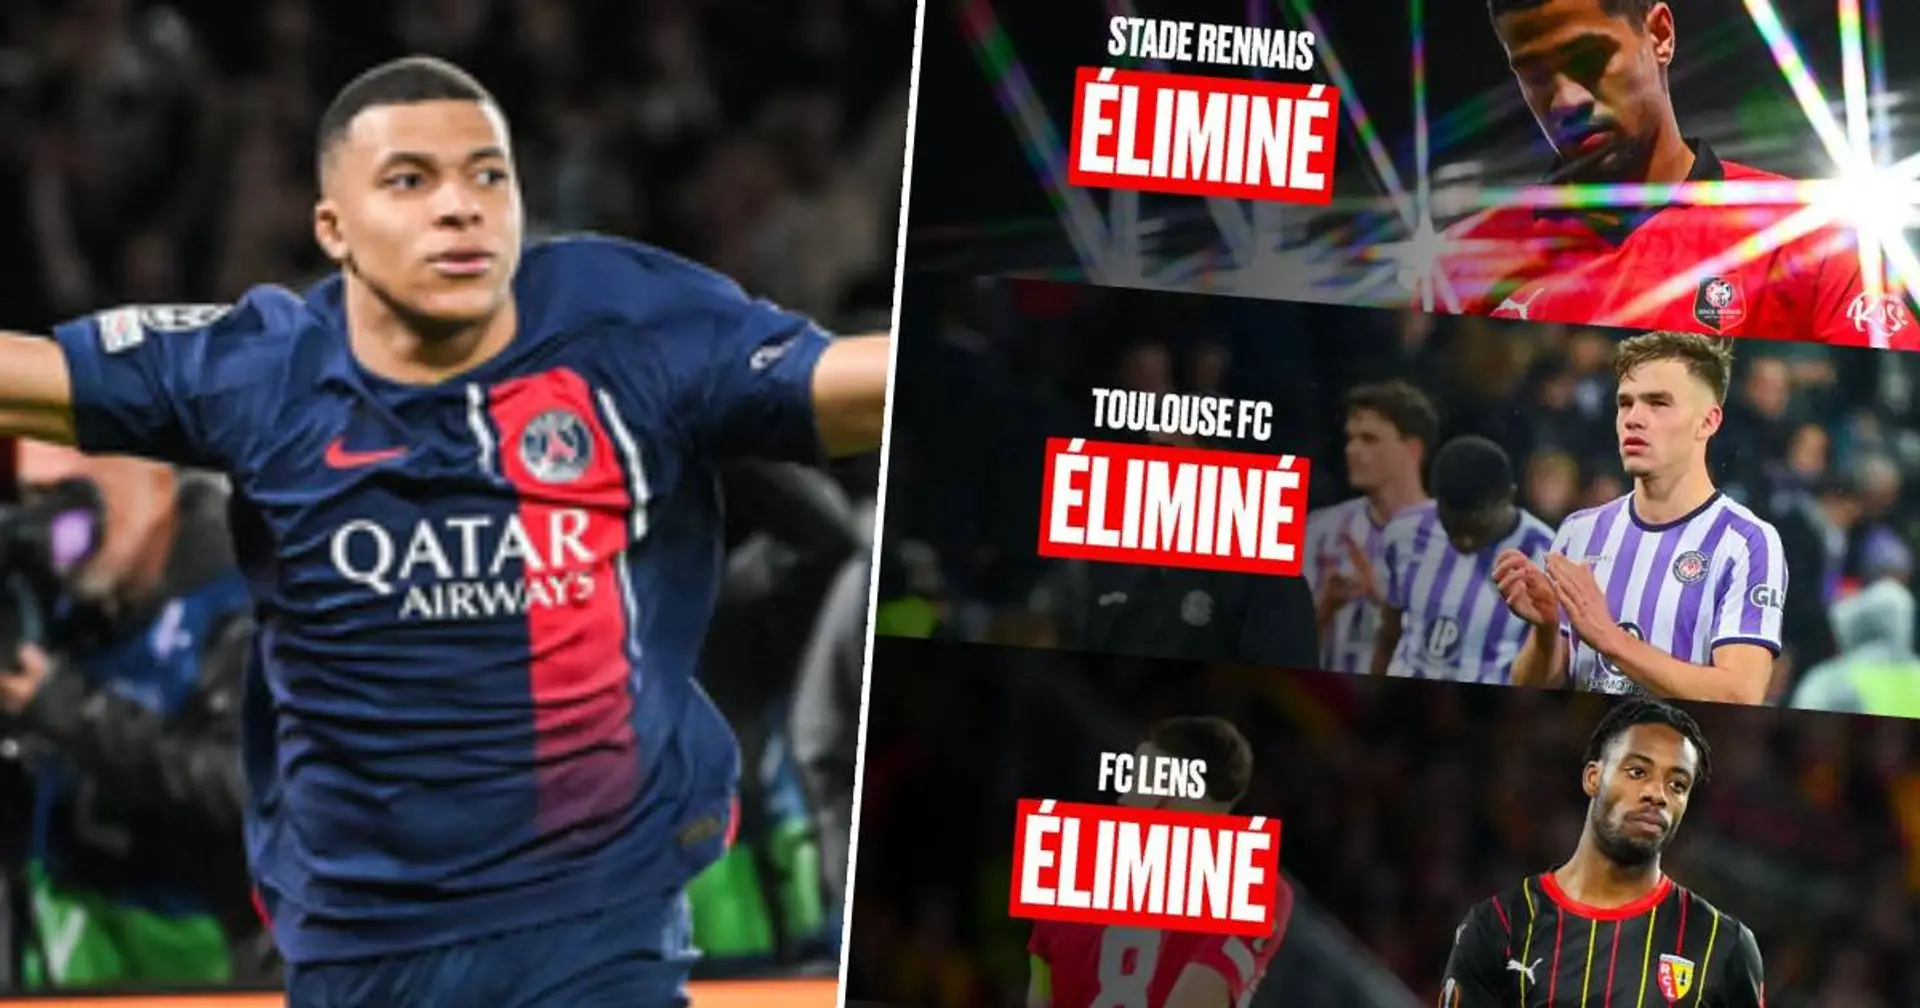 "C’est la honte" : les derniers résultats des clubs français en Coupe d'Europe inquiètent les fans